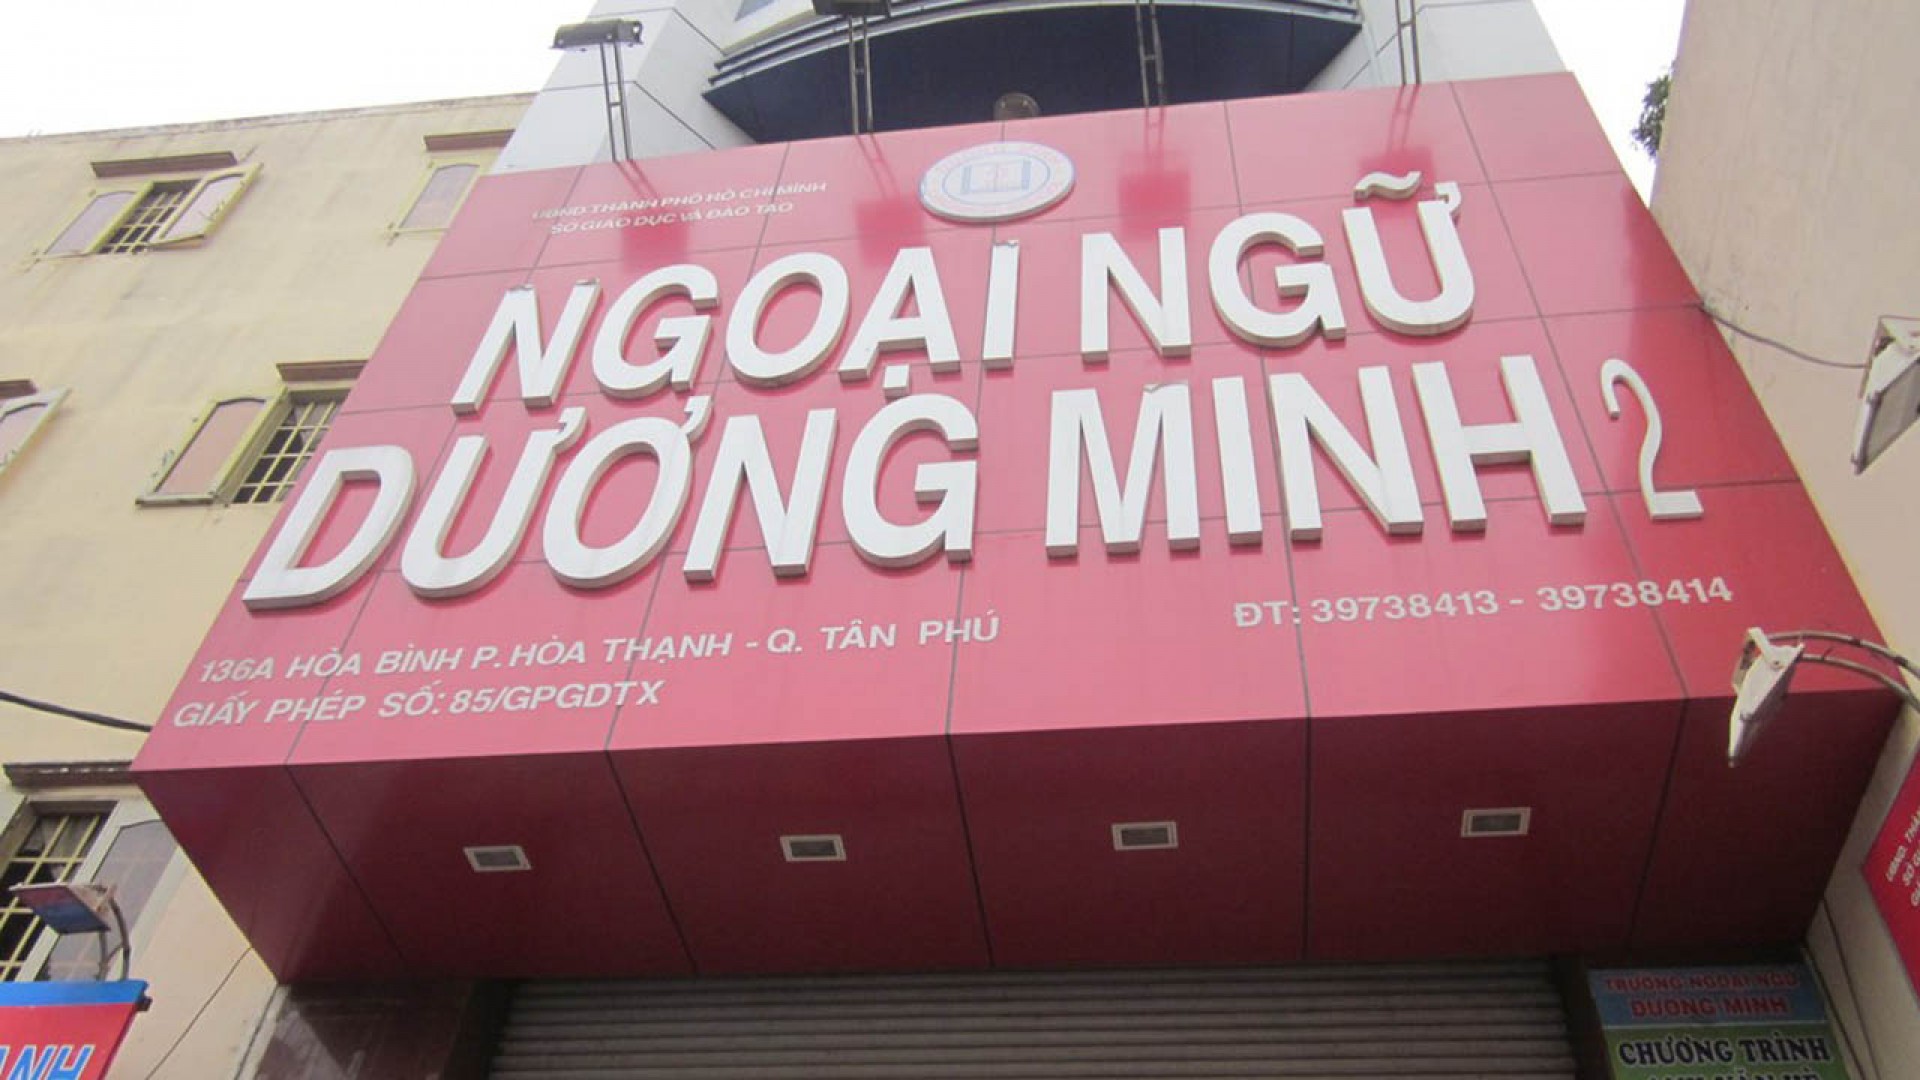 Cùng điểm danh các cơ sở Ngoại ngữ Dương Minh khắp Sài Gòn